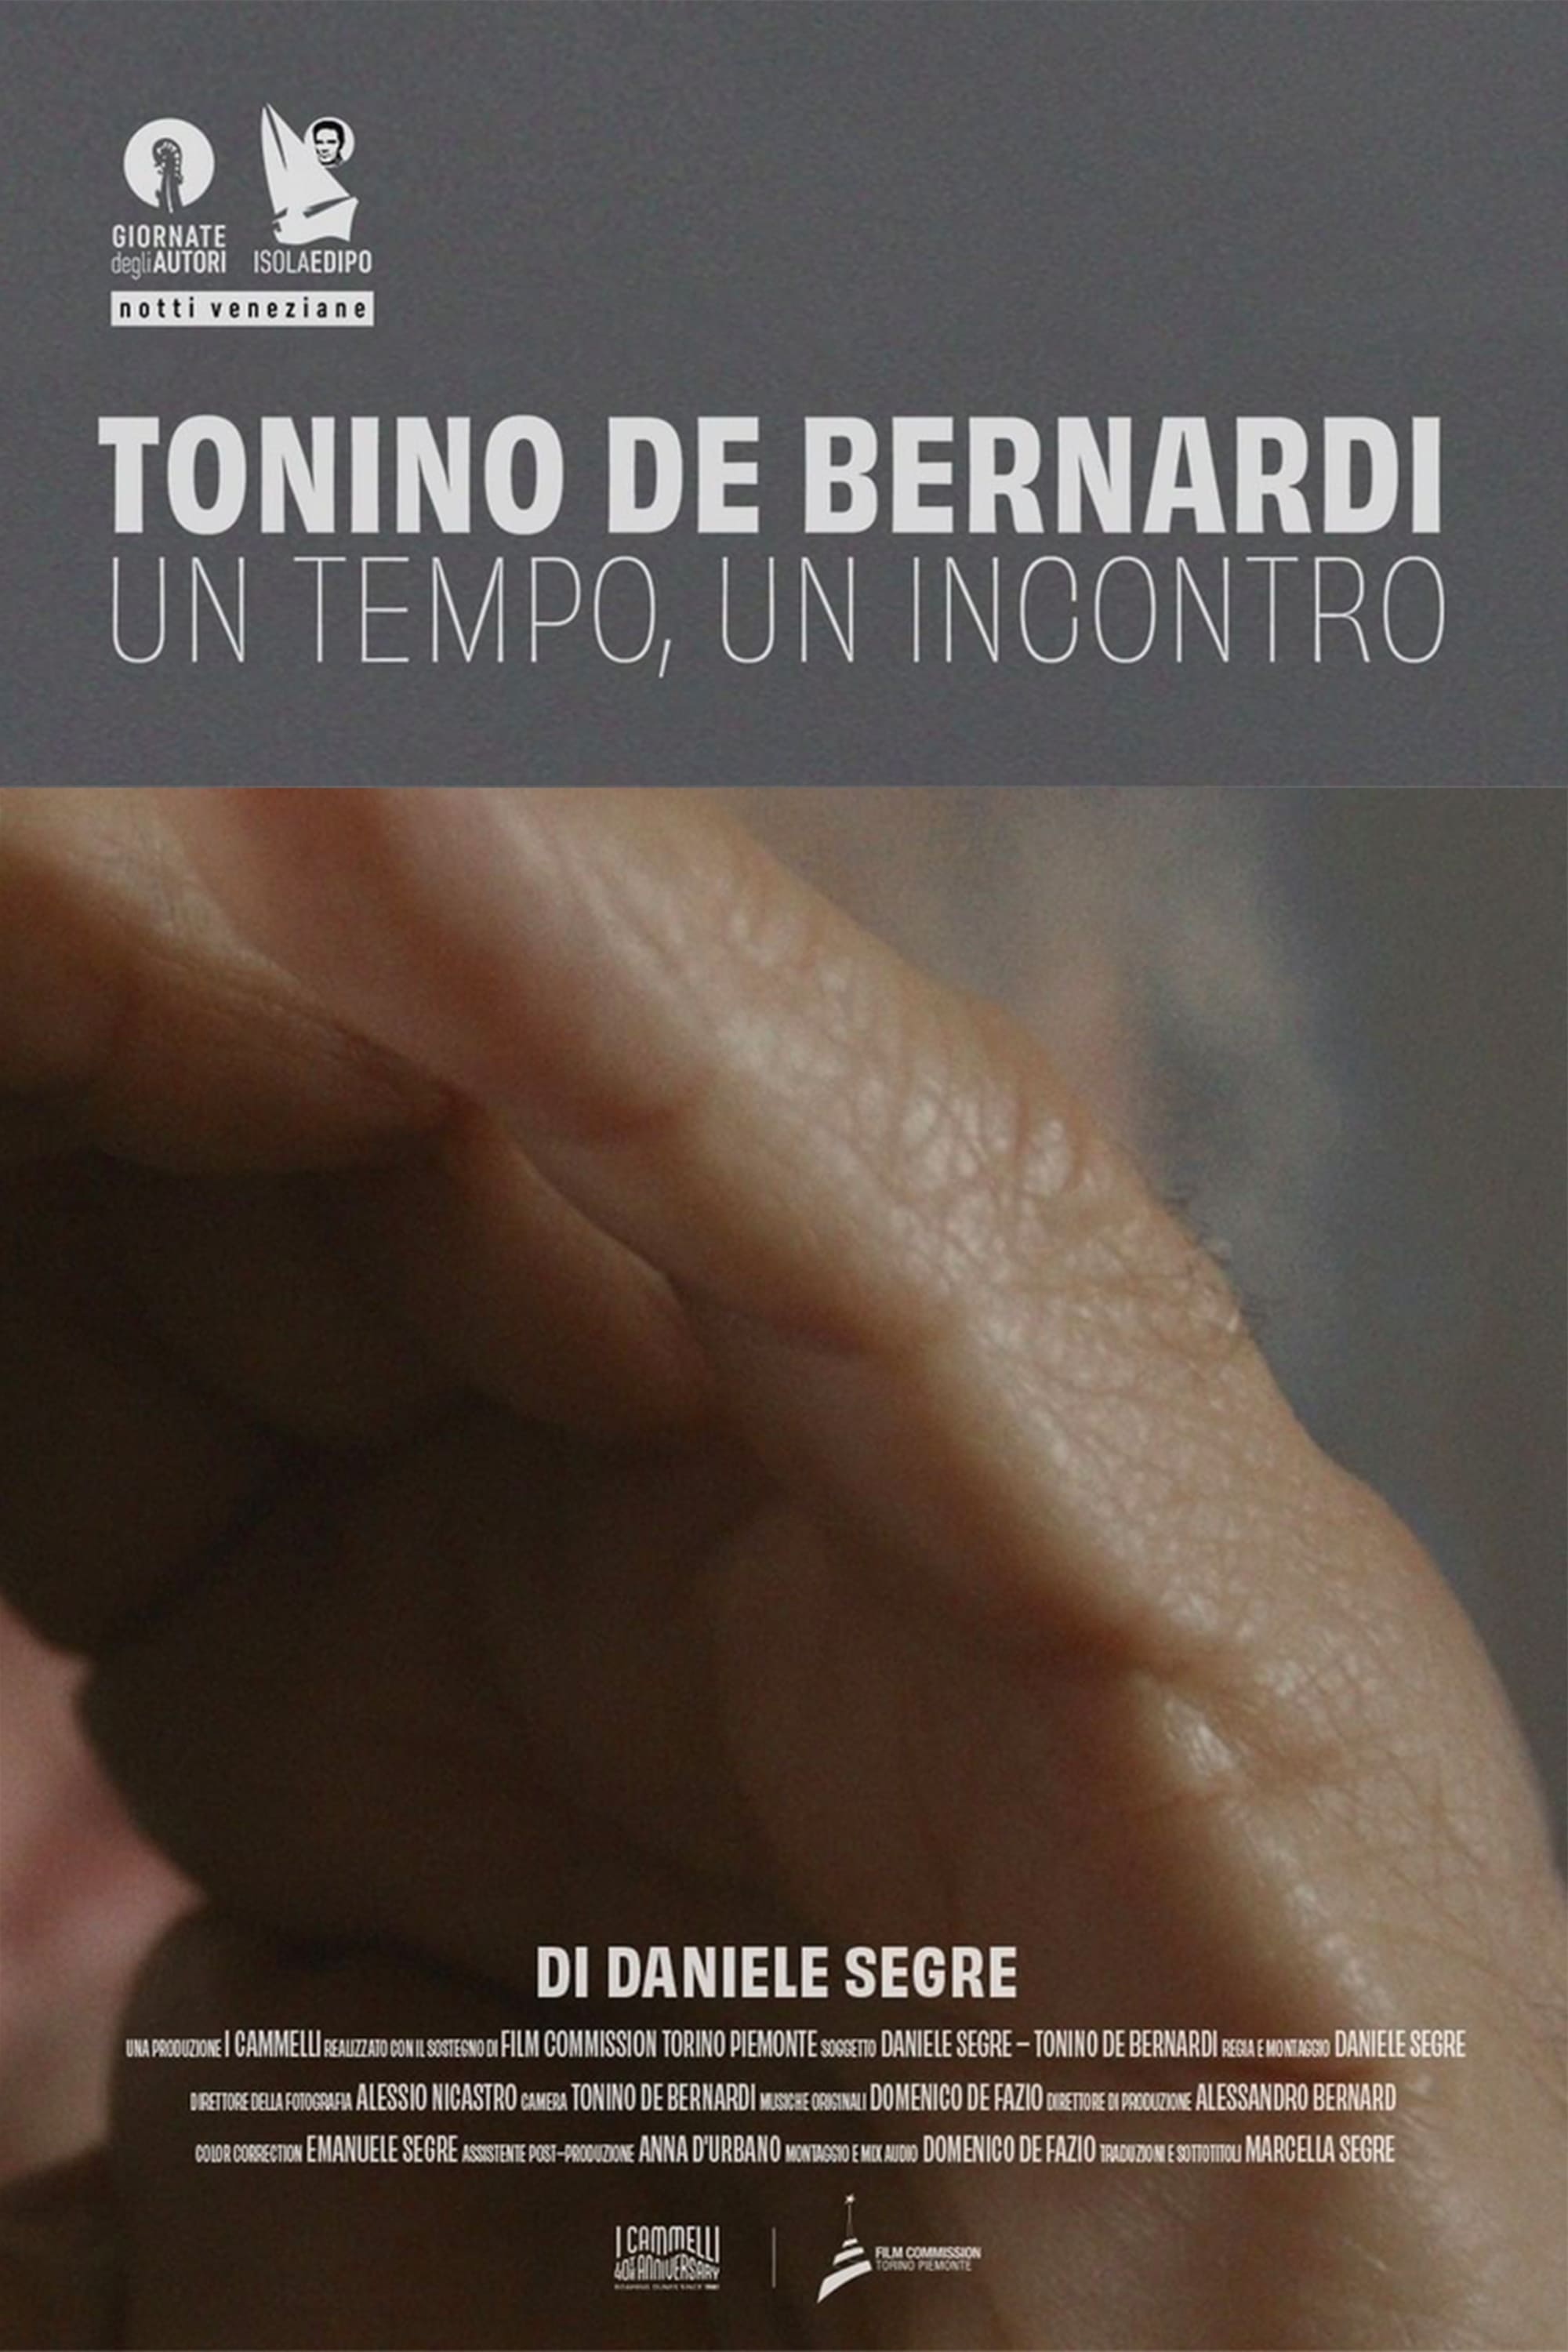 Tonino De Bernardi: One Time, One Encounter